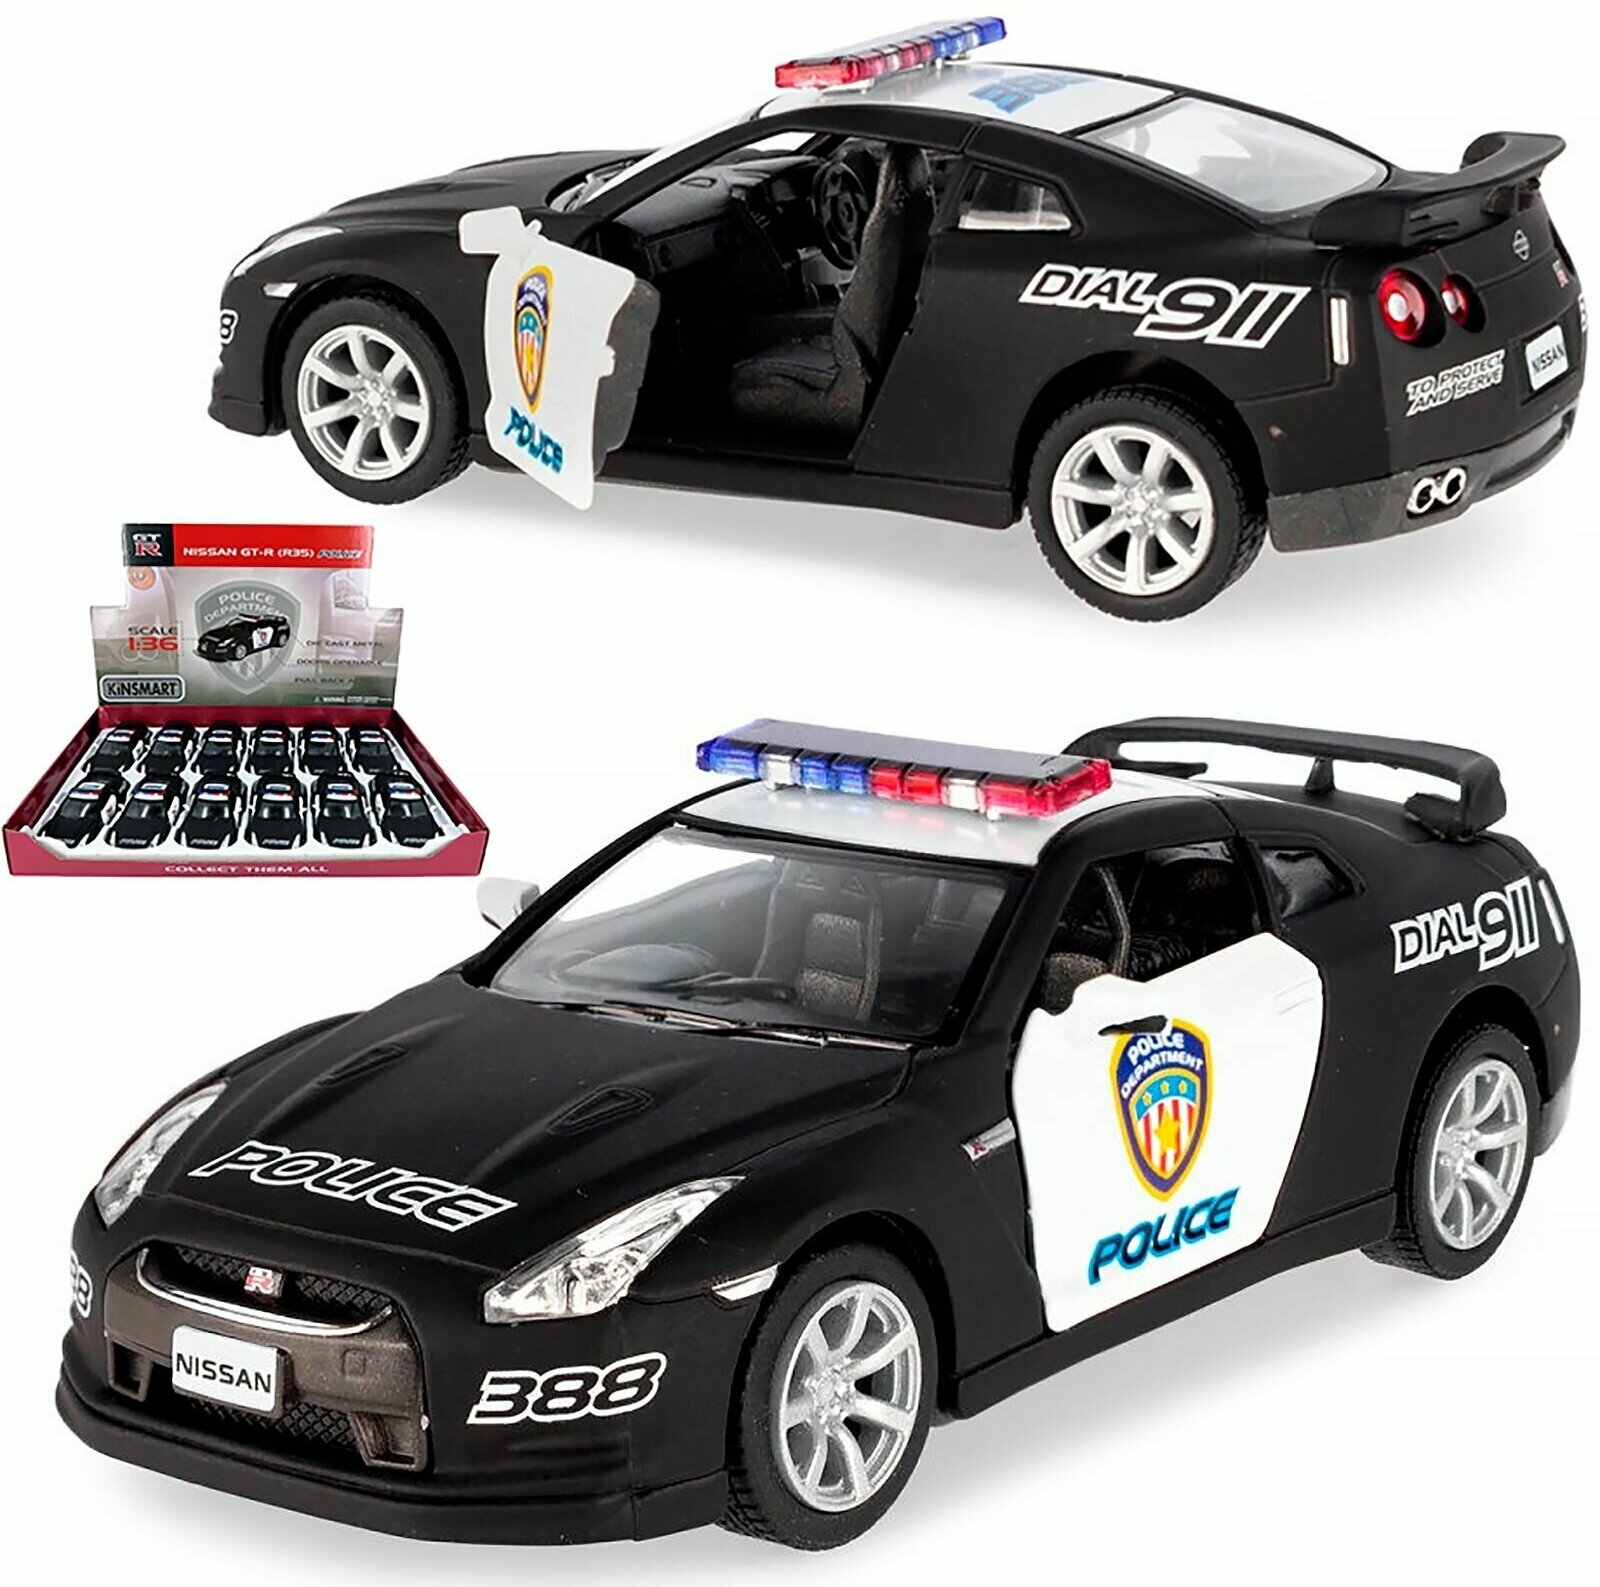 Металлическая машинка игрушка 1:36 2009 Nissan GT-R R35 (Ниссан ГТР) Полицейская 13 см., инерционная